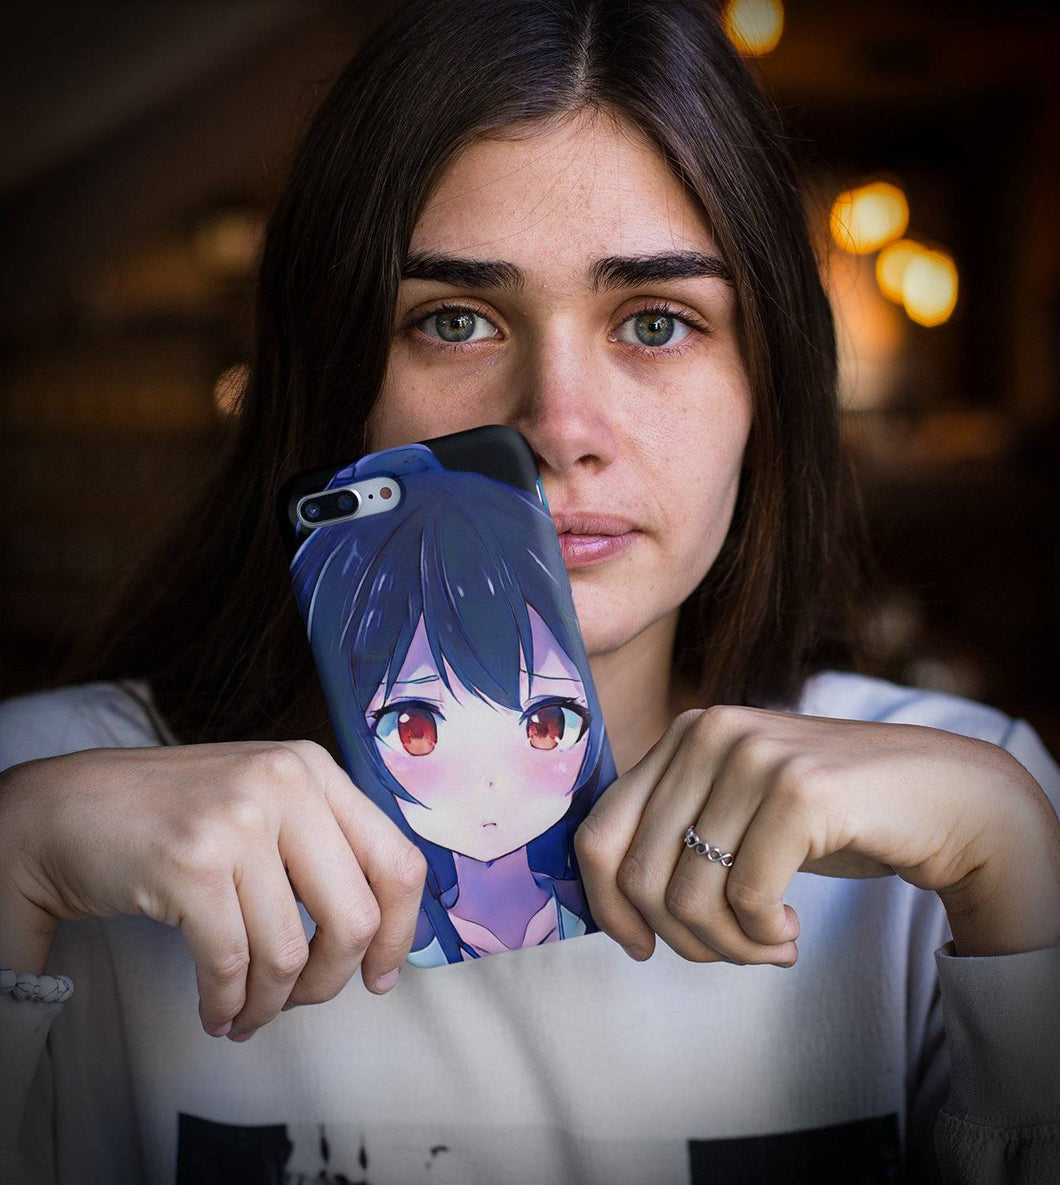 Sad Anime Girl iPhone Case